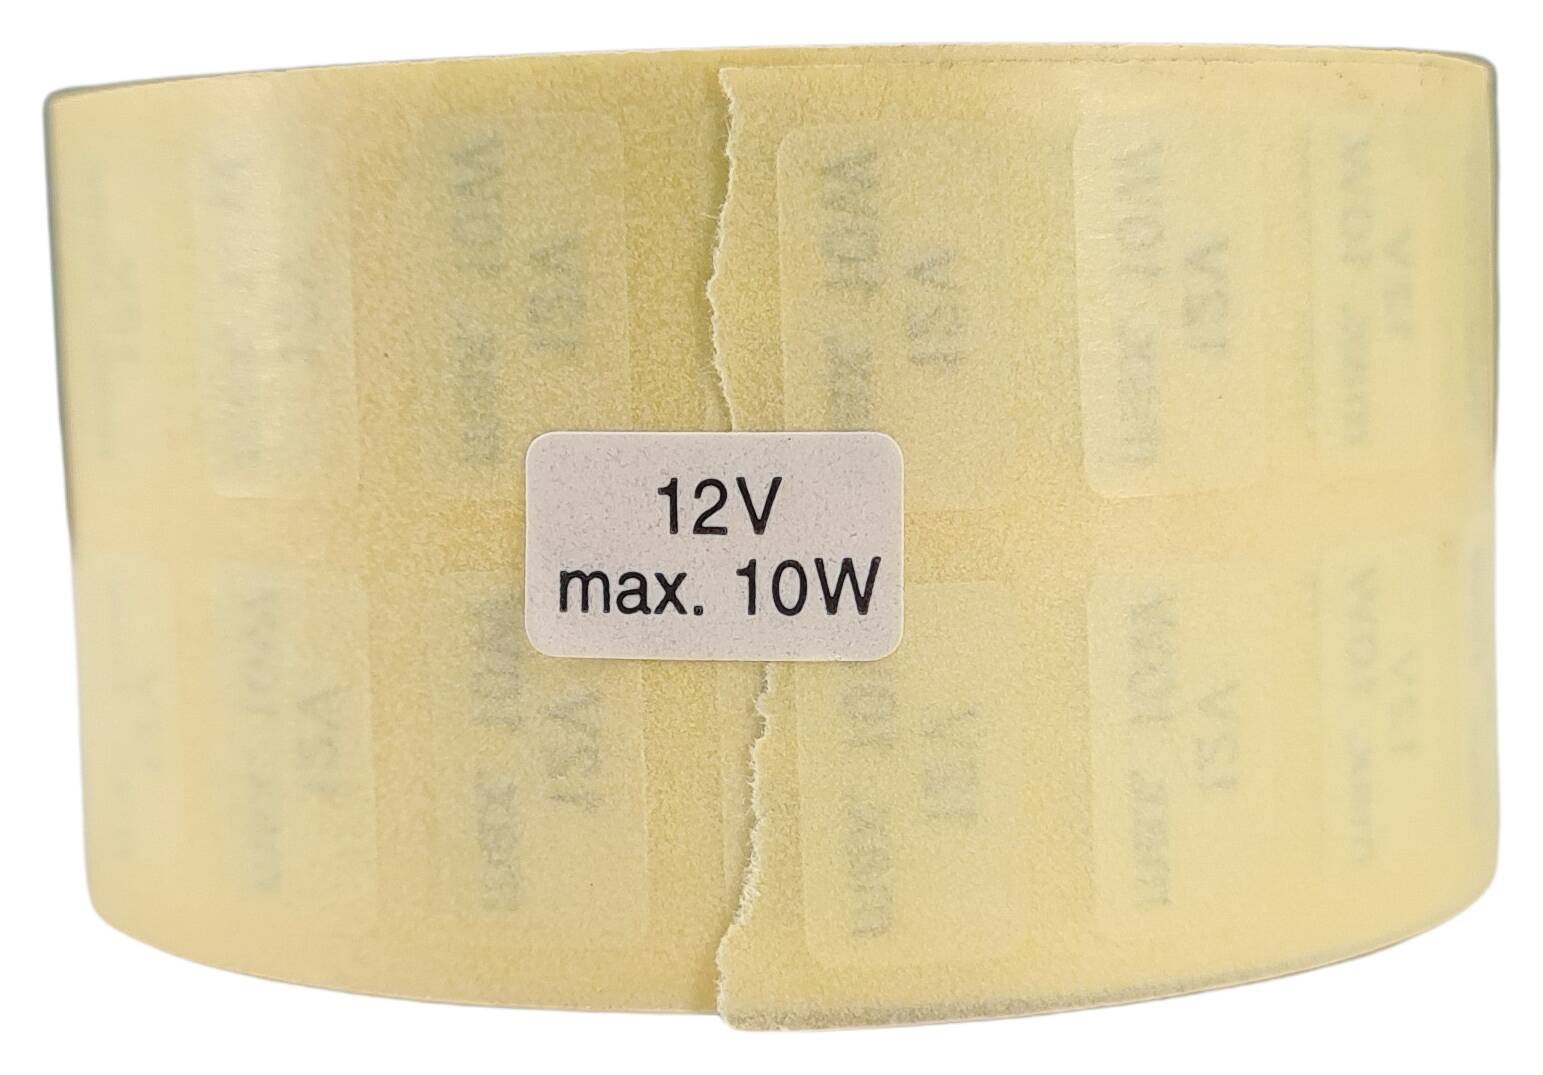 Etikett 12V max. 10 W 15x9 mm schreibweiss